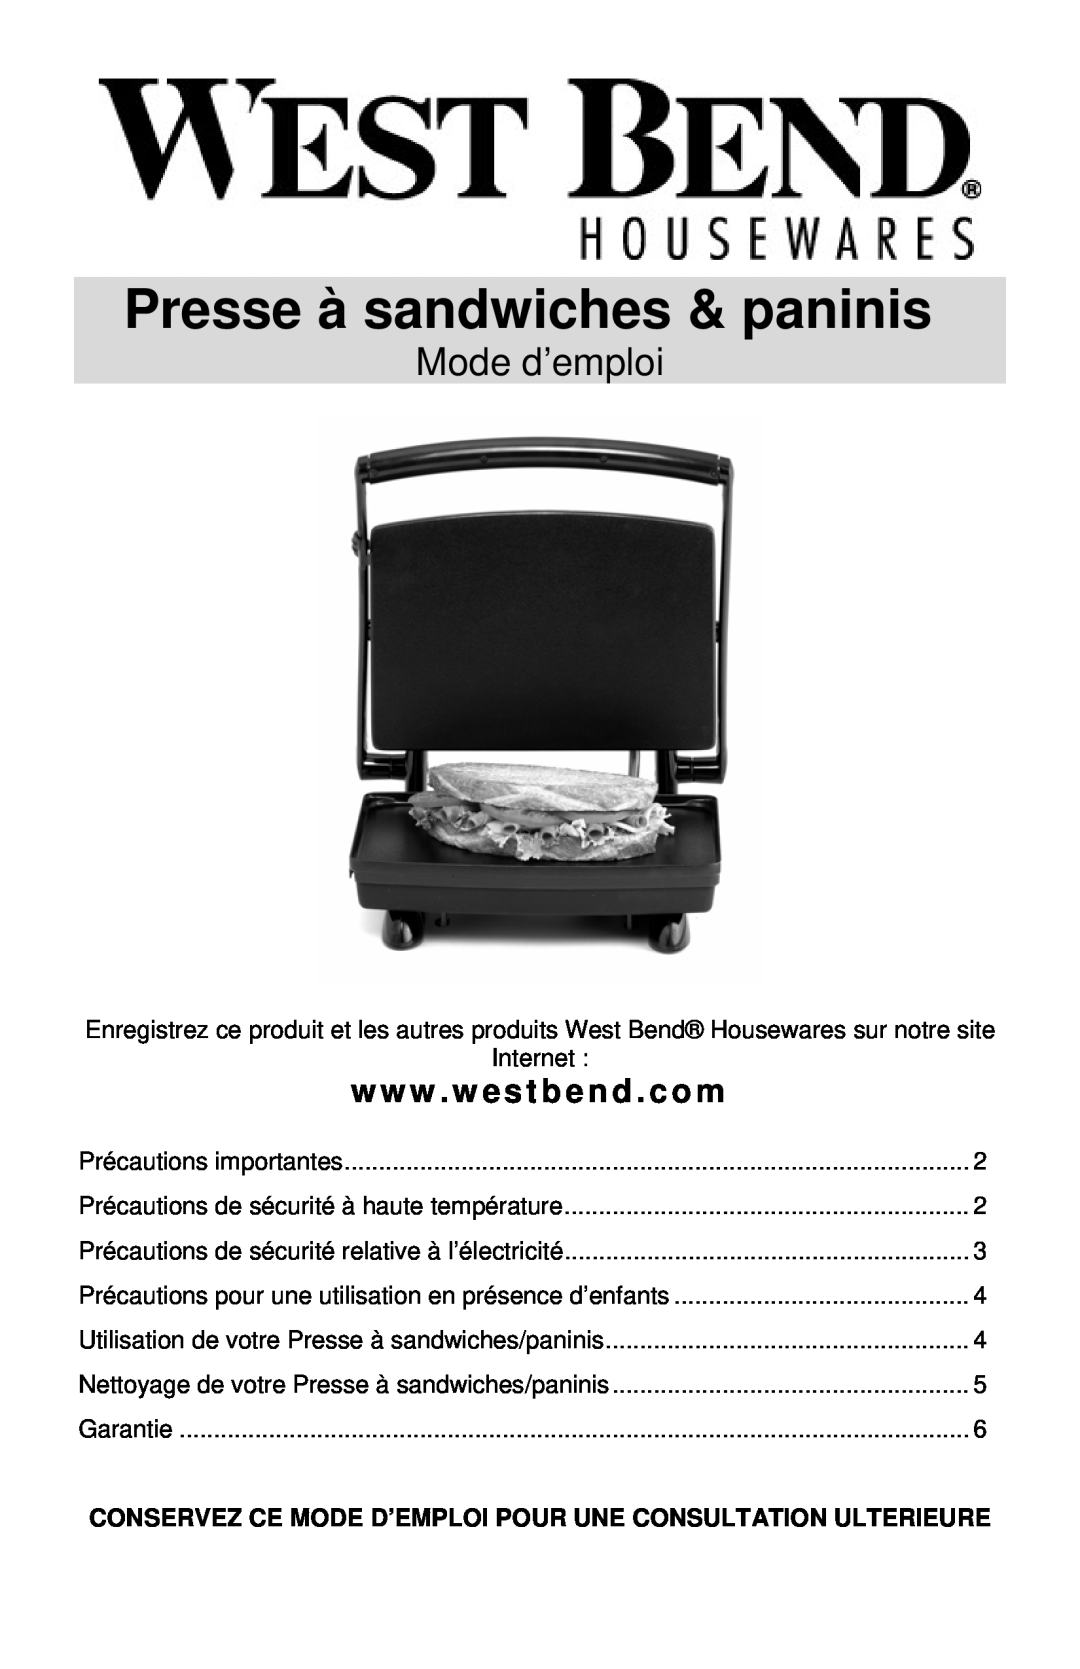 West Bend Sandwich Maker instruction manual Presse à sandwiches & paninis, Mode d’emploi, w w w . w estbend . com 